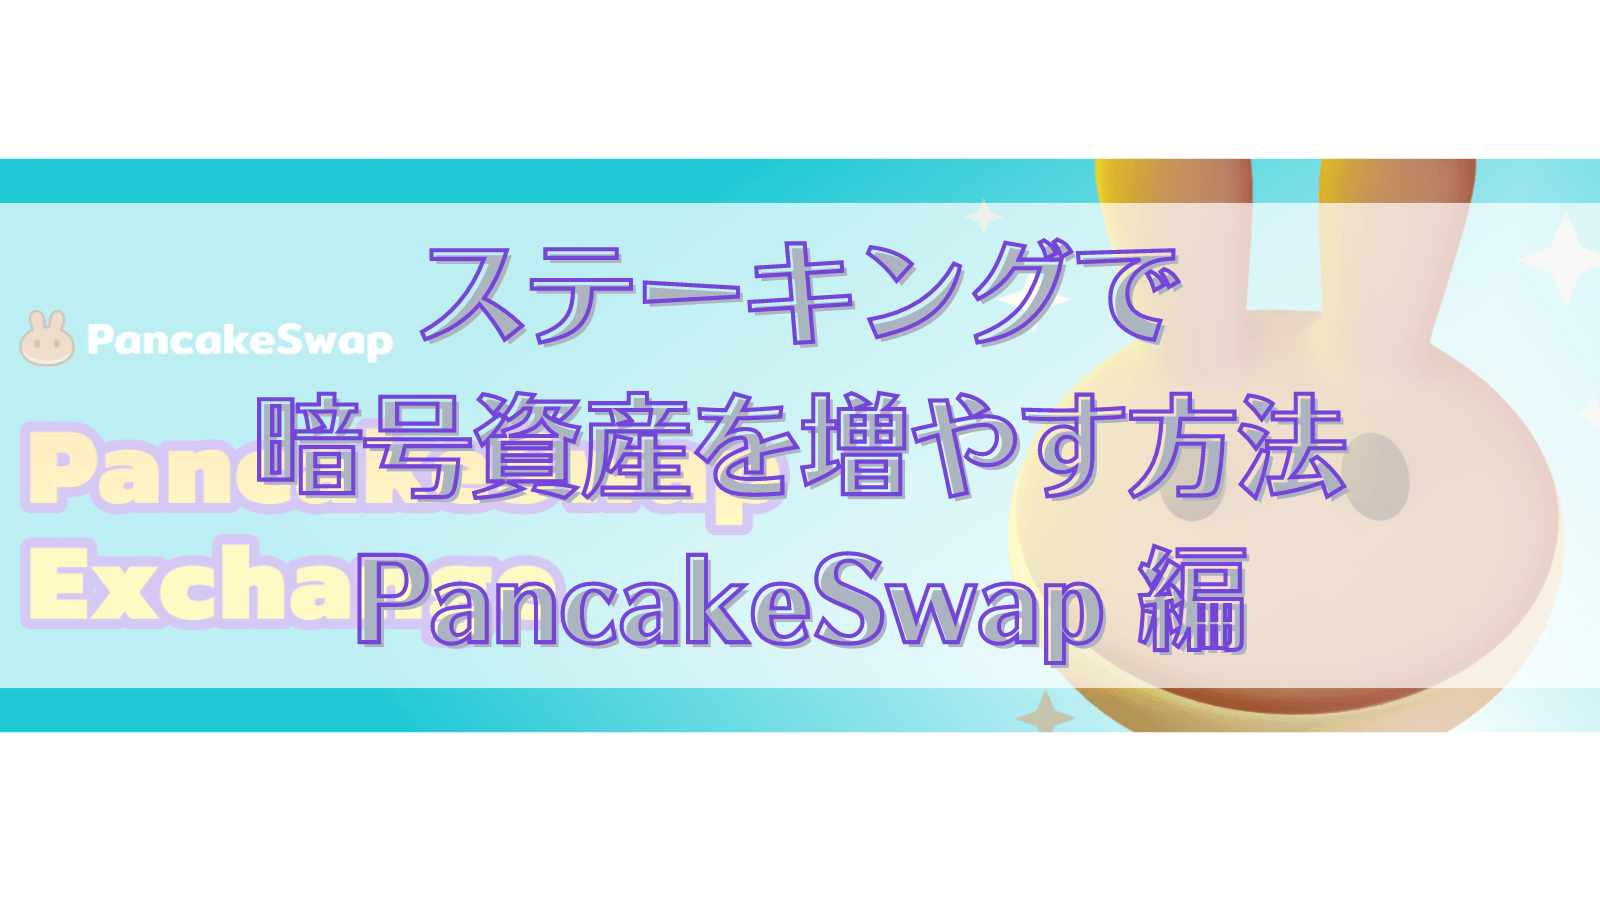 ステーキングで 暗号資産を増やす方法 PancakeSwap 編